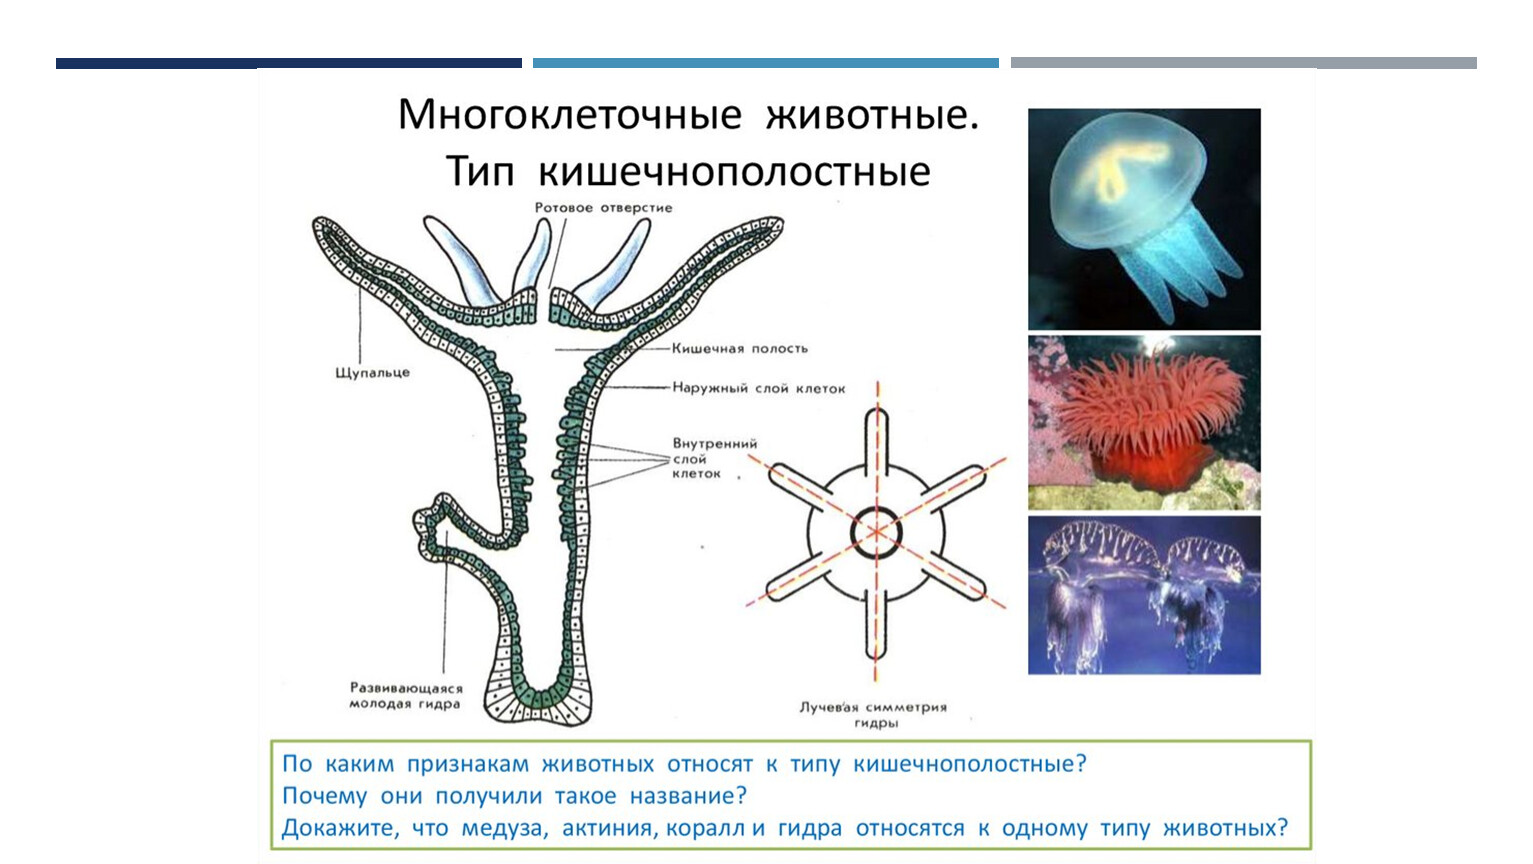 Образуется гастральная полость. Кишечнополостные гидра медузы кораллы. Тип Кишечнополостные строение медузы. Многоклеточные животные Тип Кишечнополостные. Гидроидные Сцифоидные коралловые полипы.